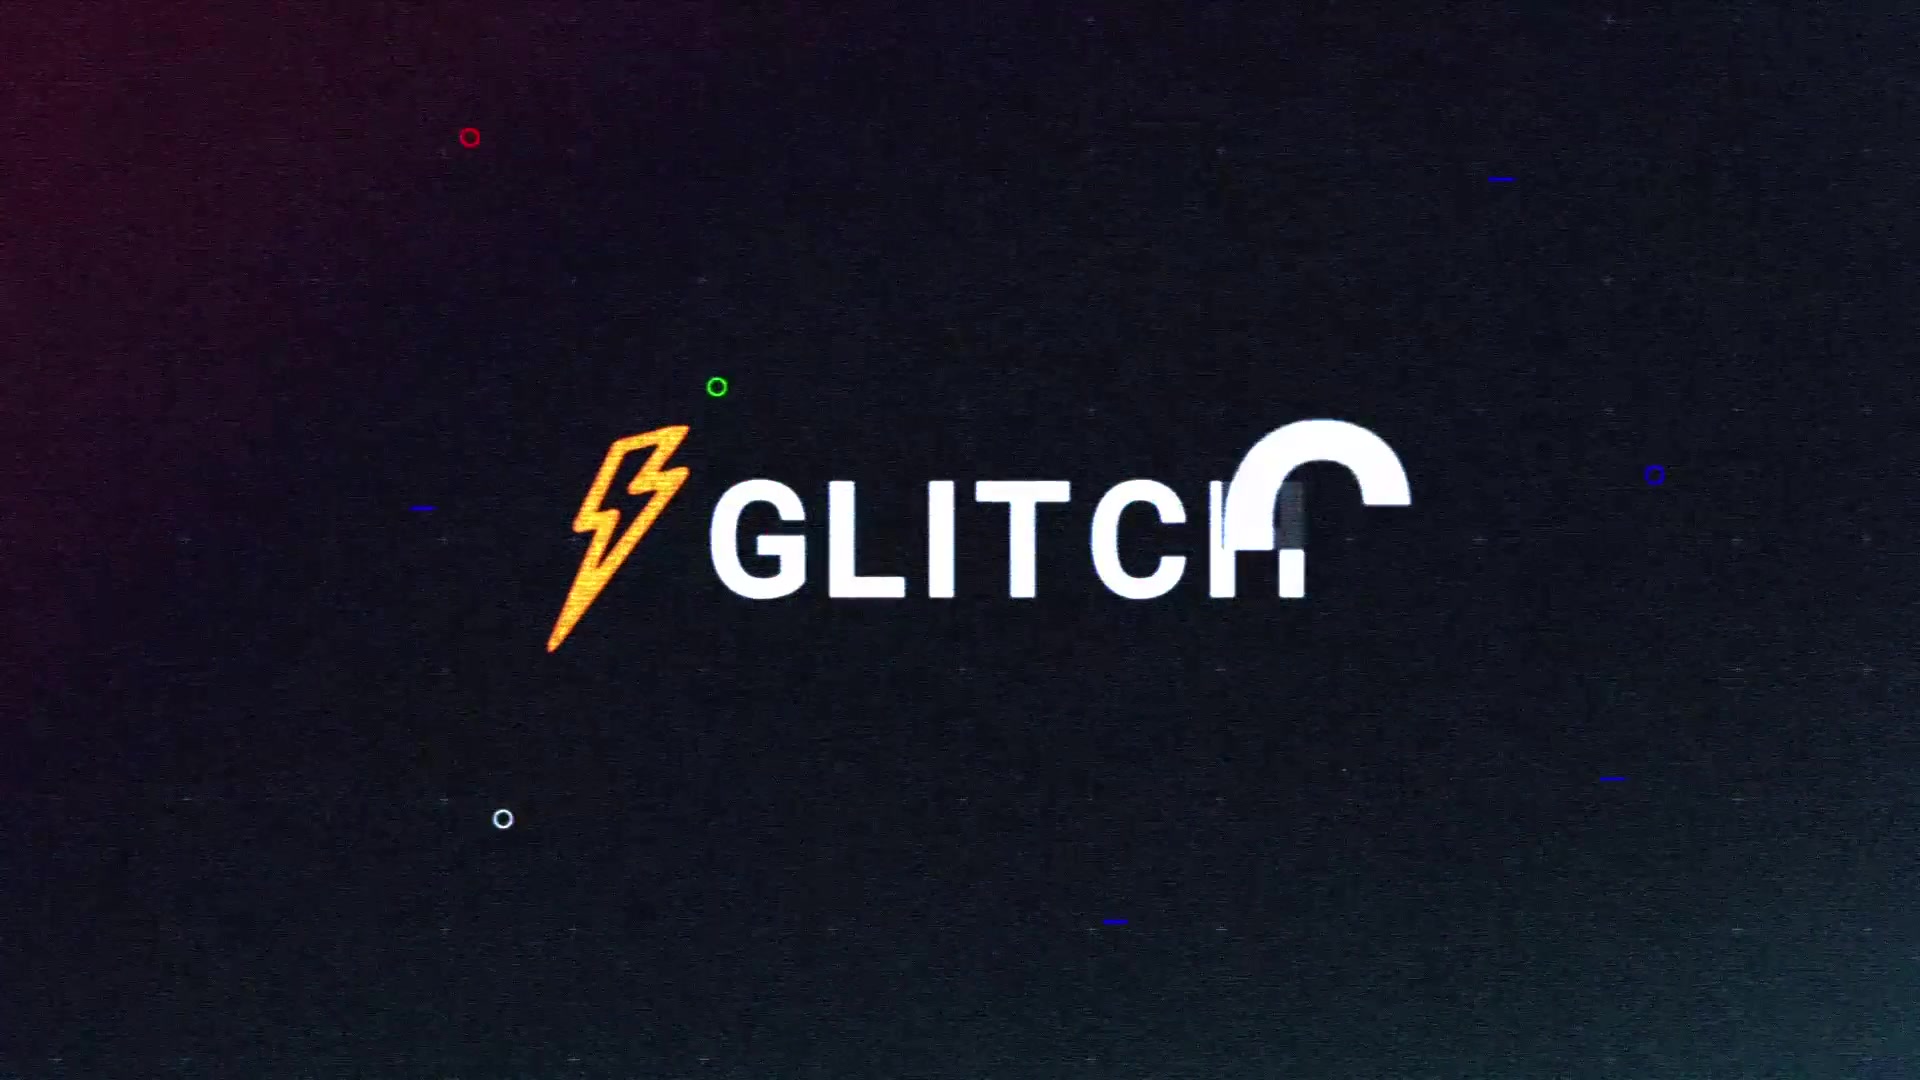 Glitch Logo Premiere Pro MOGRT Videohive 25745727 Premiere Pro Image 2